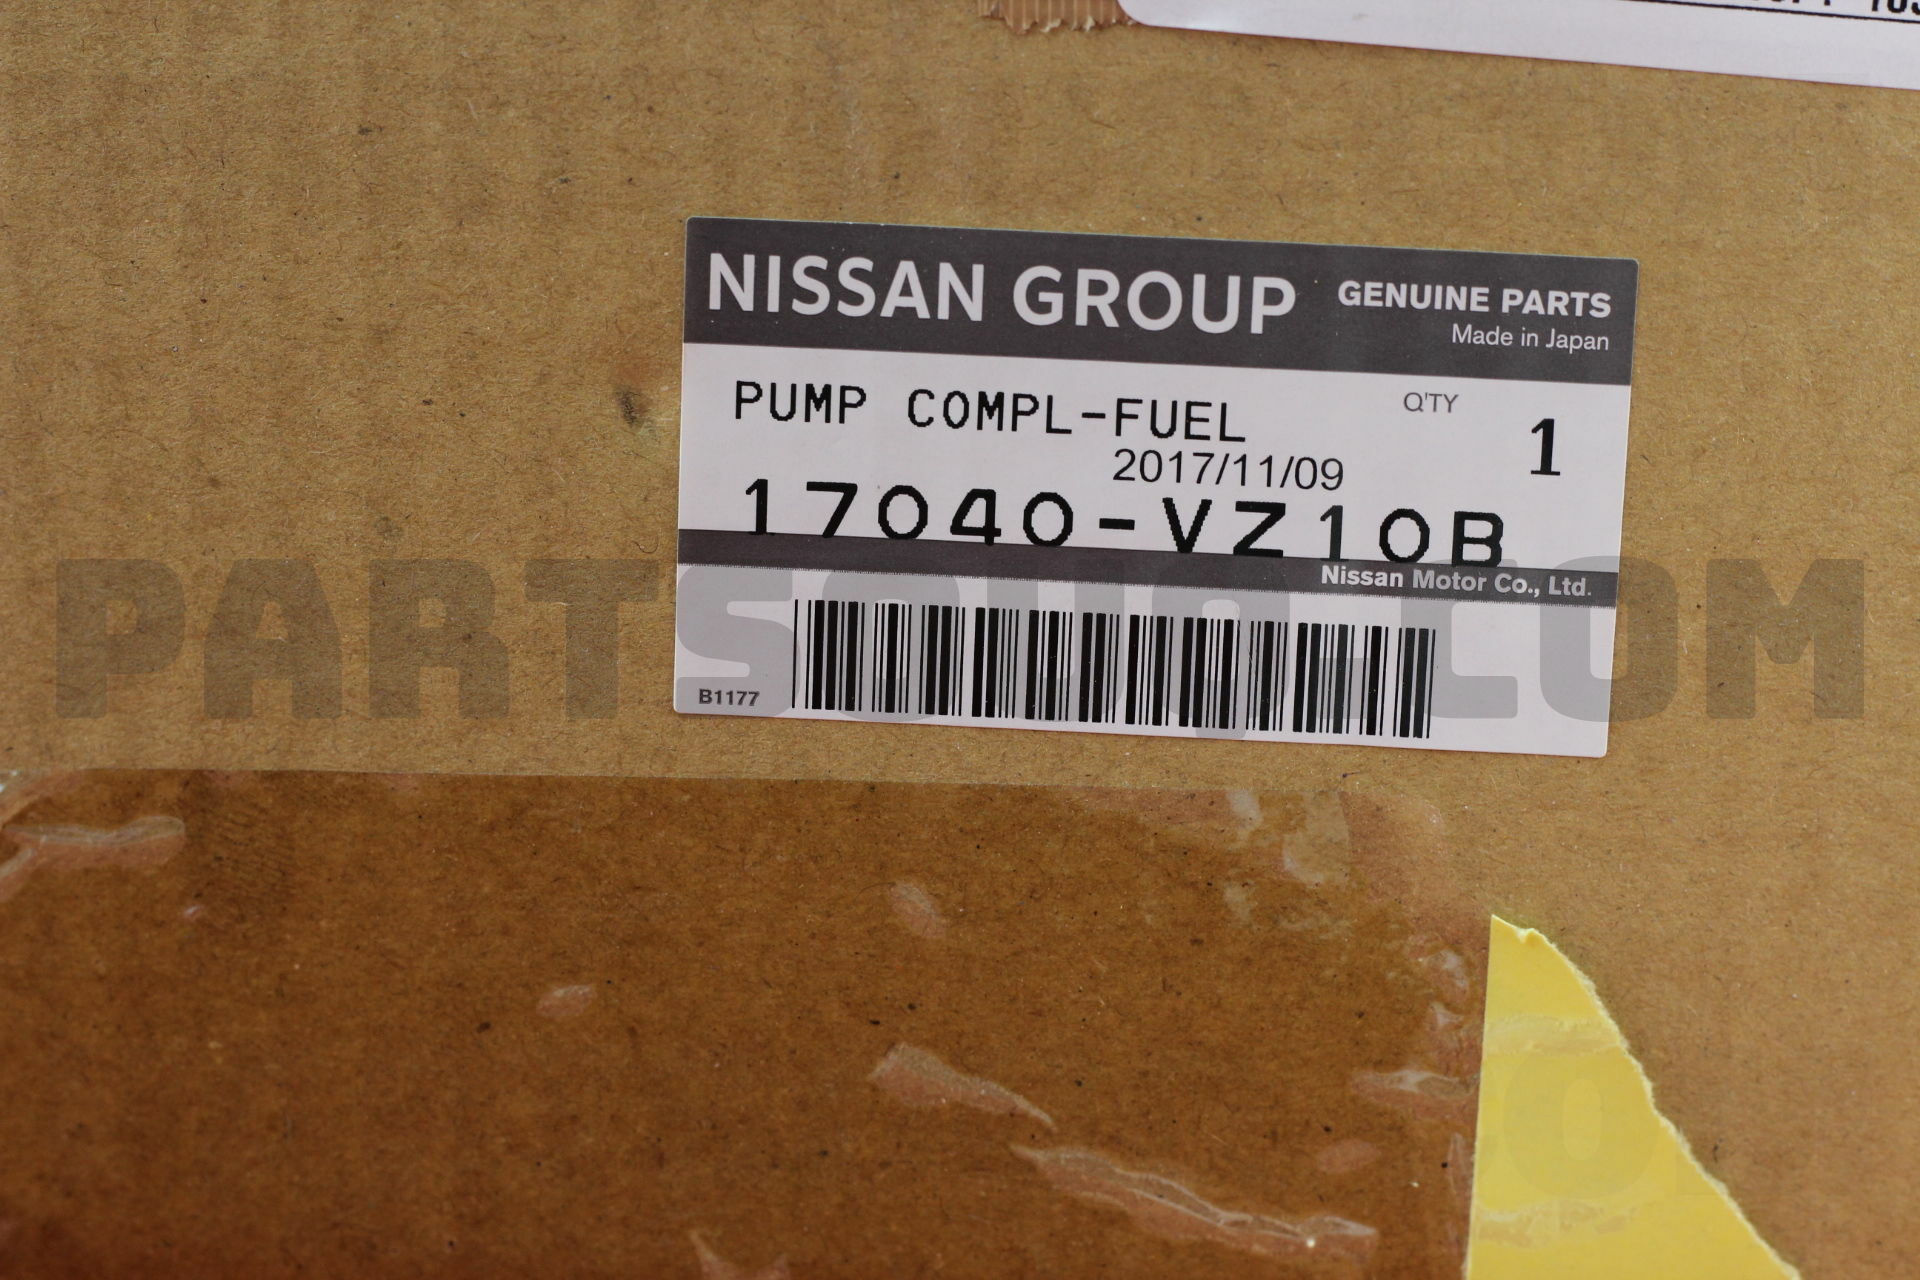 17040VZ10B Nissan PUMP COMPL-FUEL